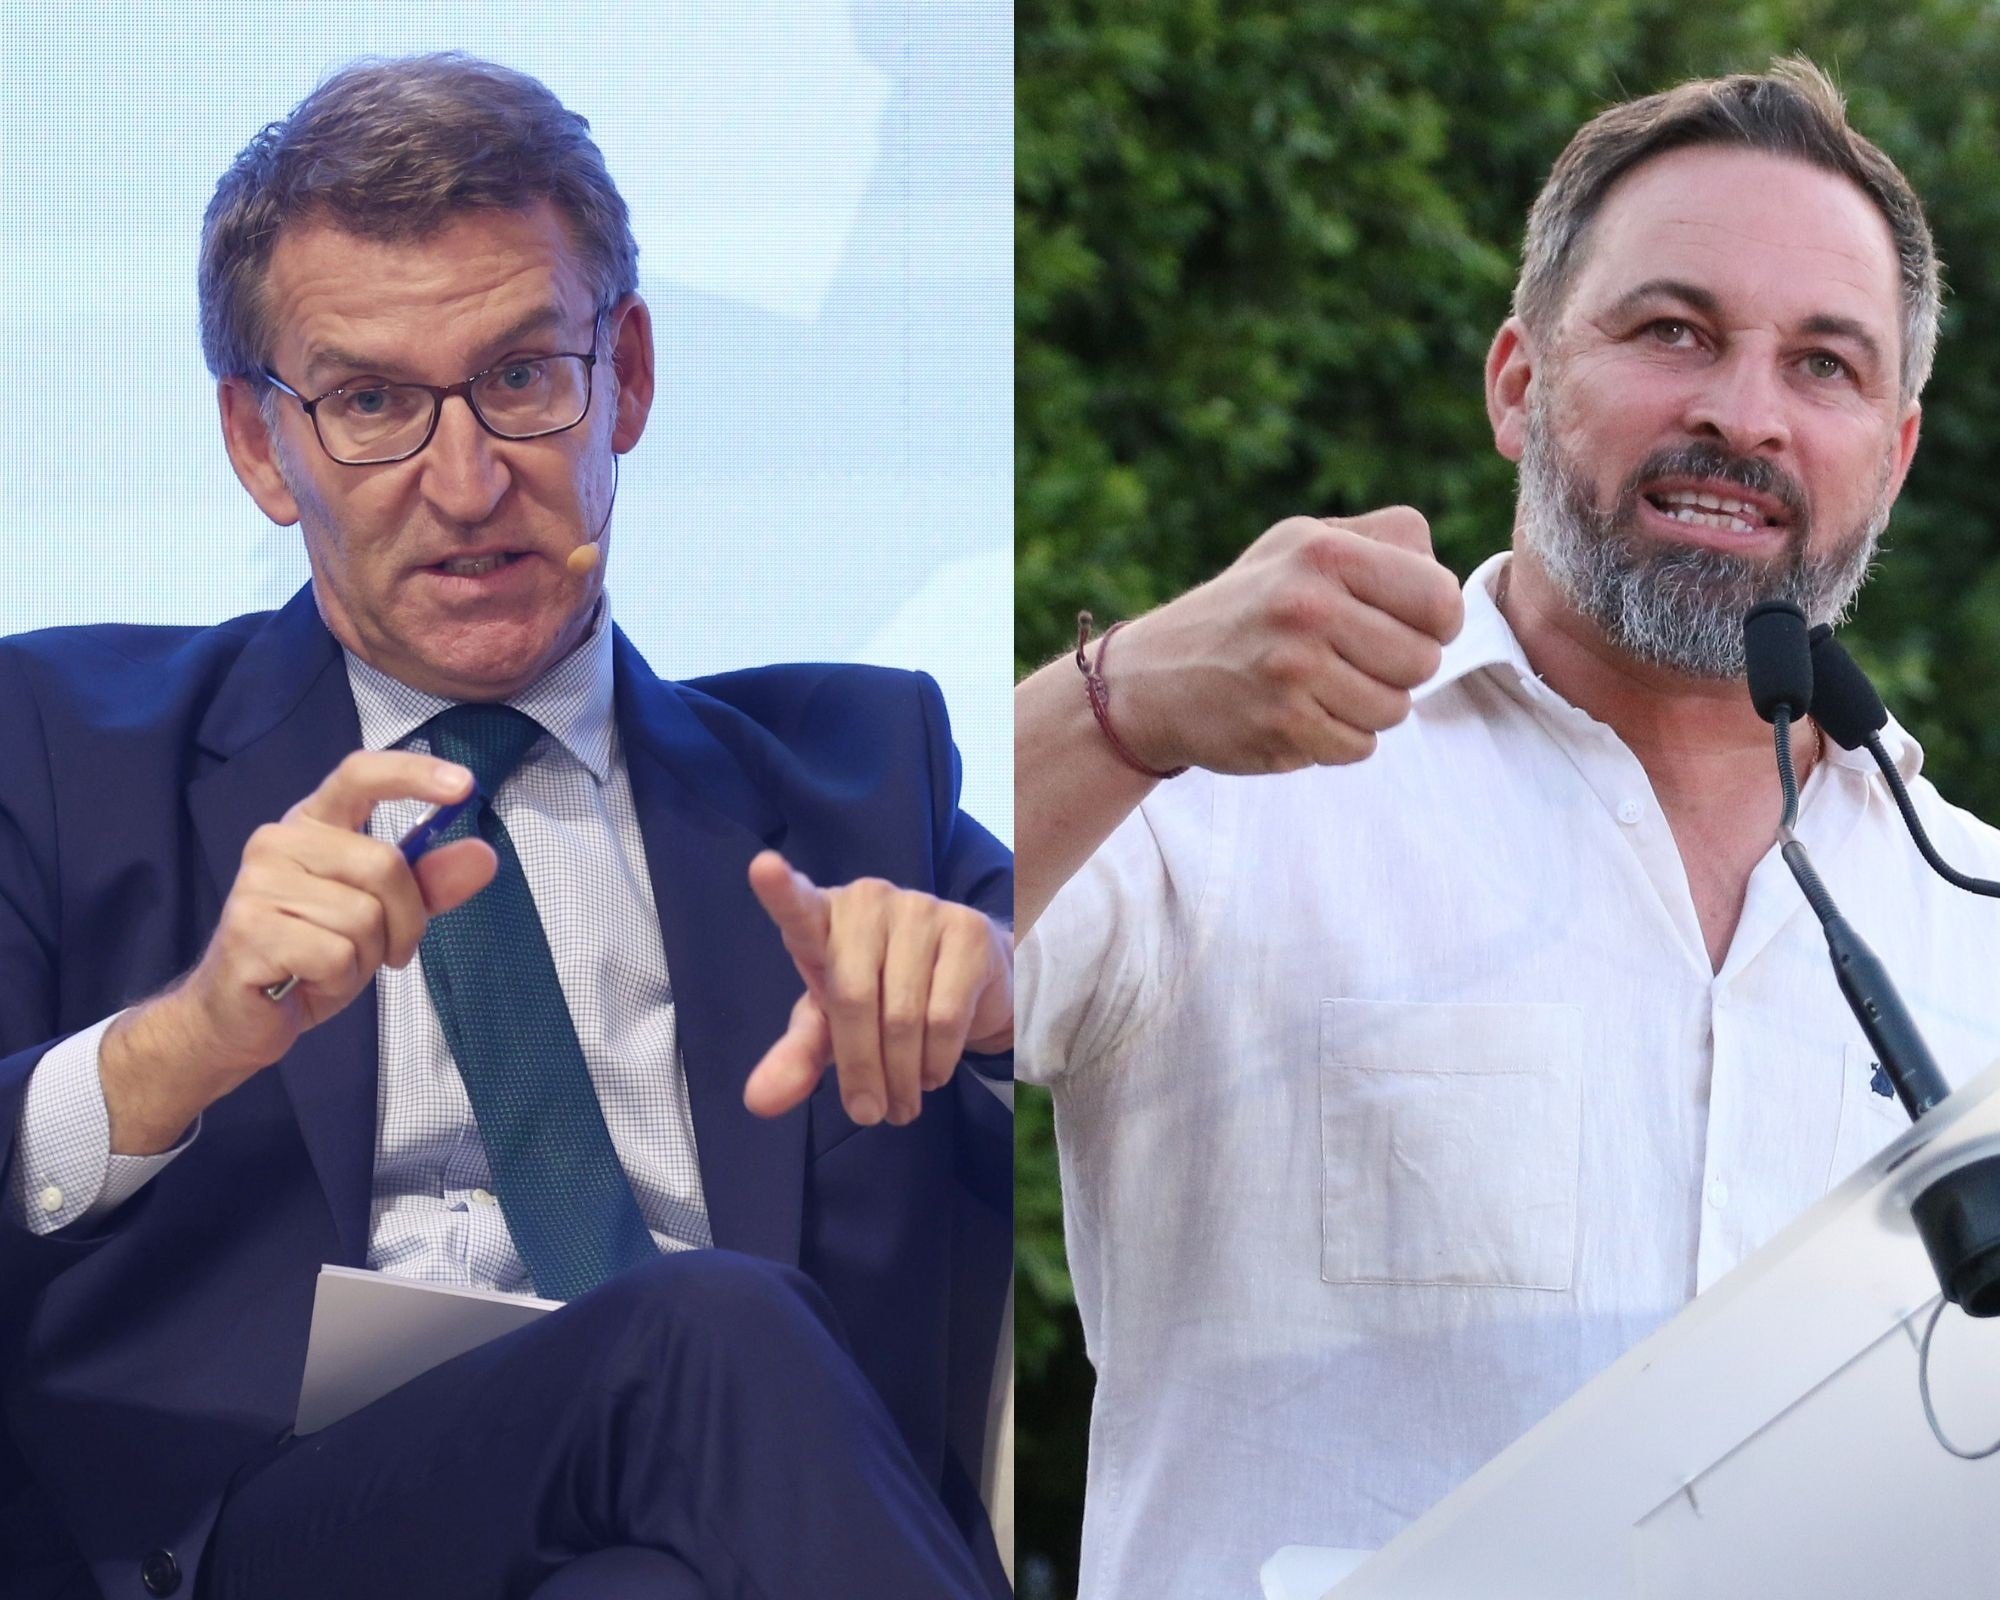 Primera reunión privada entre Núñez Feijóo y Santiago Abascal: "Correcta y dentro de la normalidad"